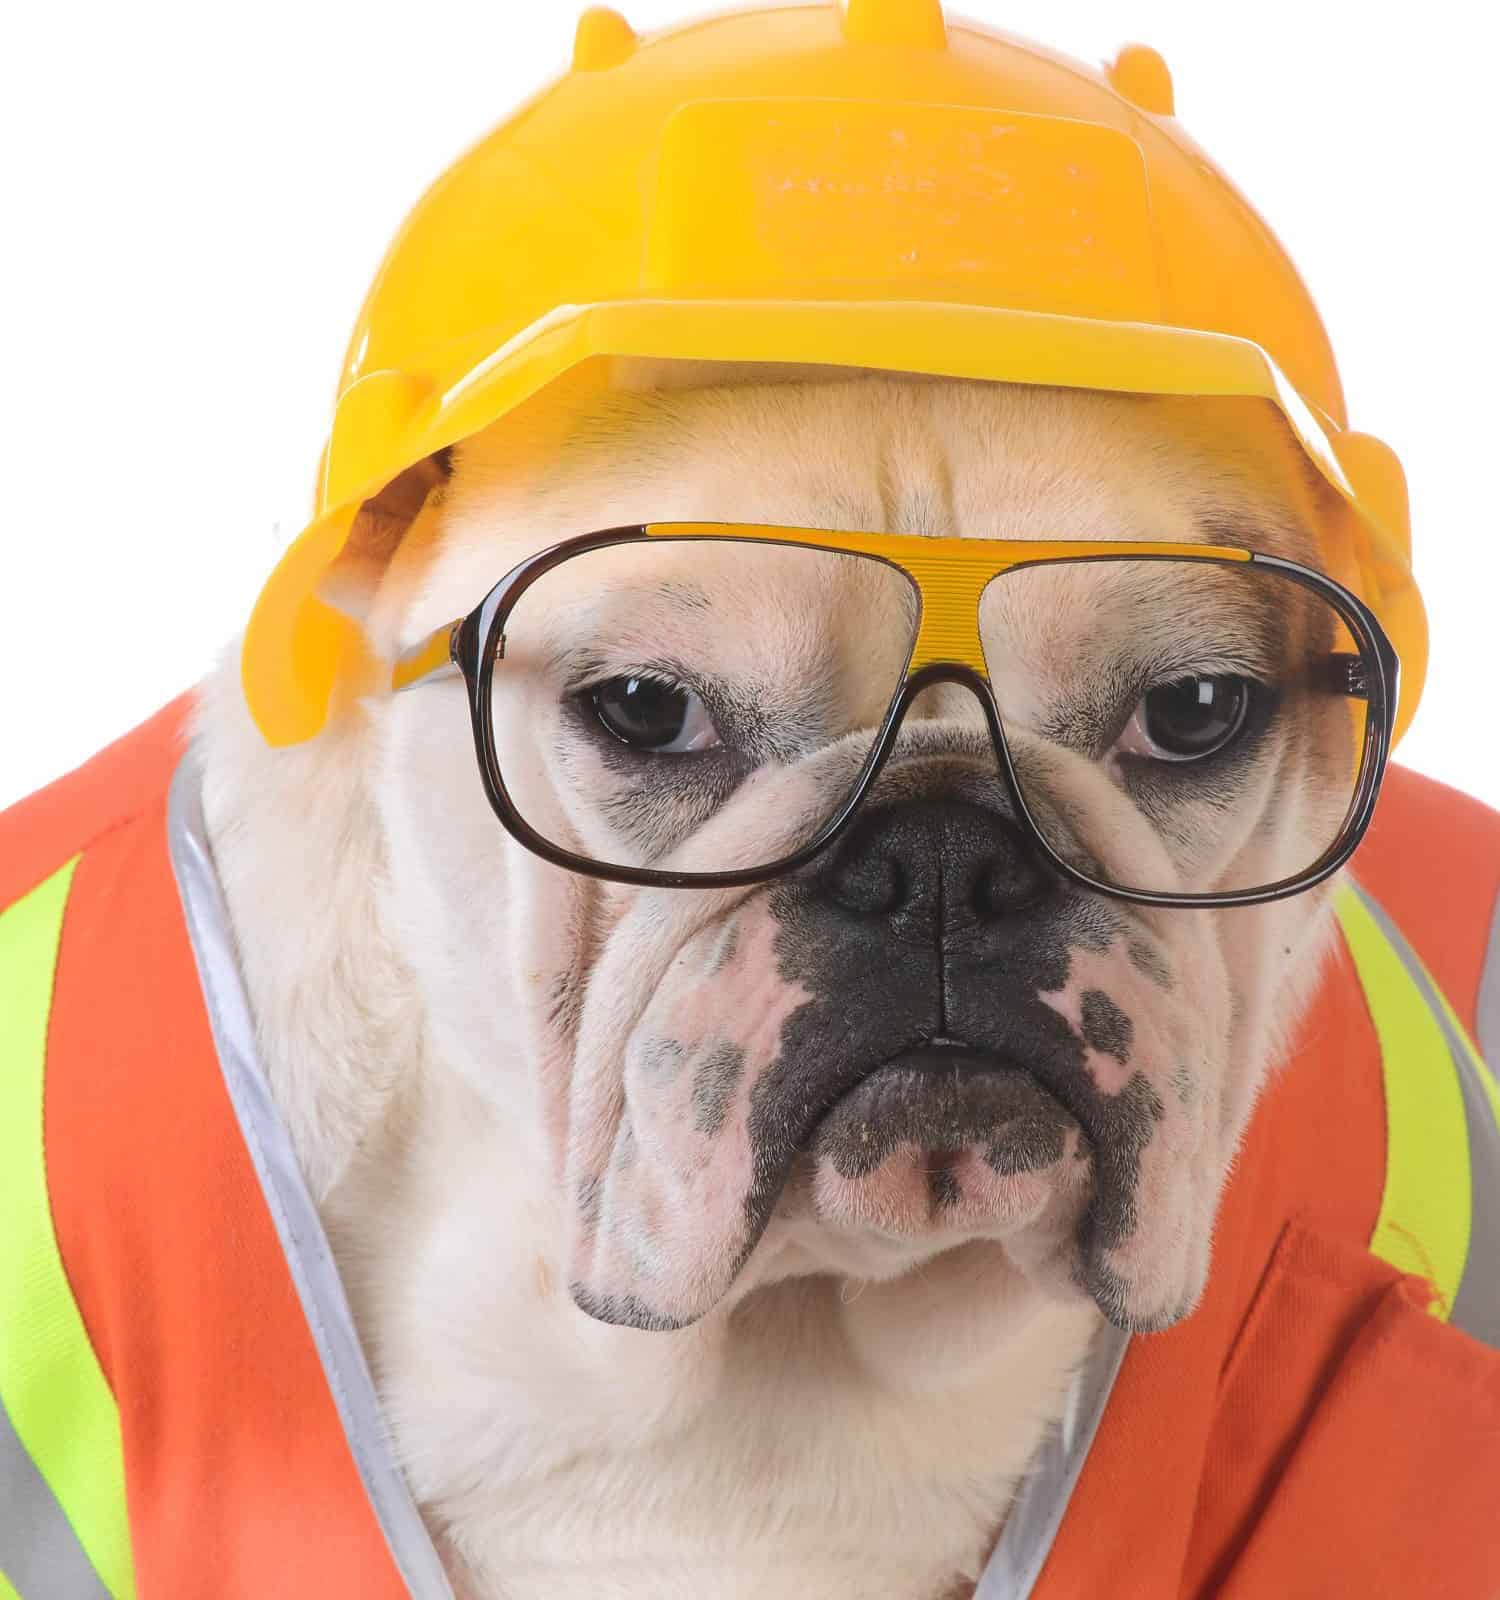 cane da lavoro - bulldog vestito da operaio edile su sfondo bianco